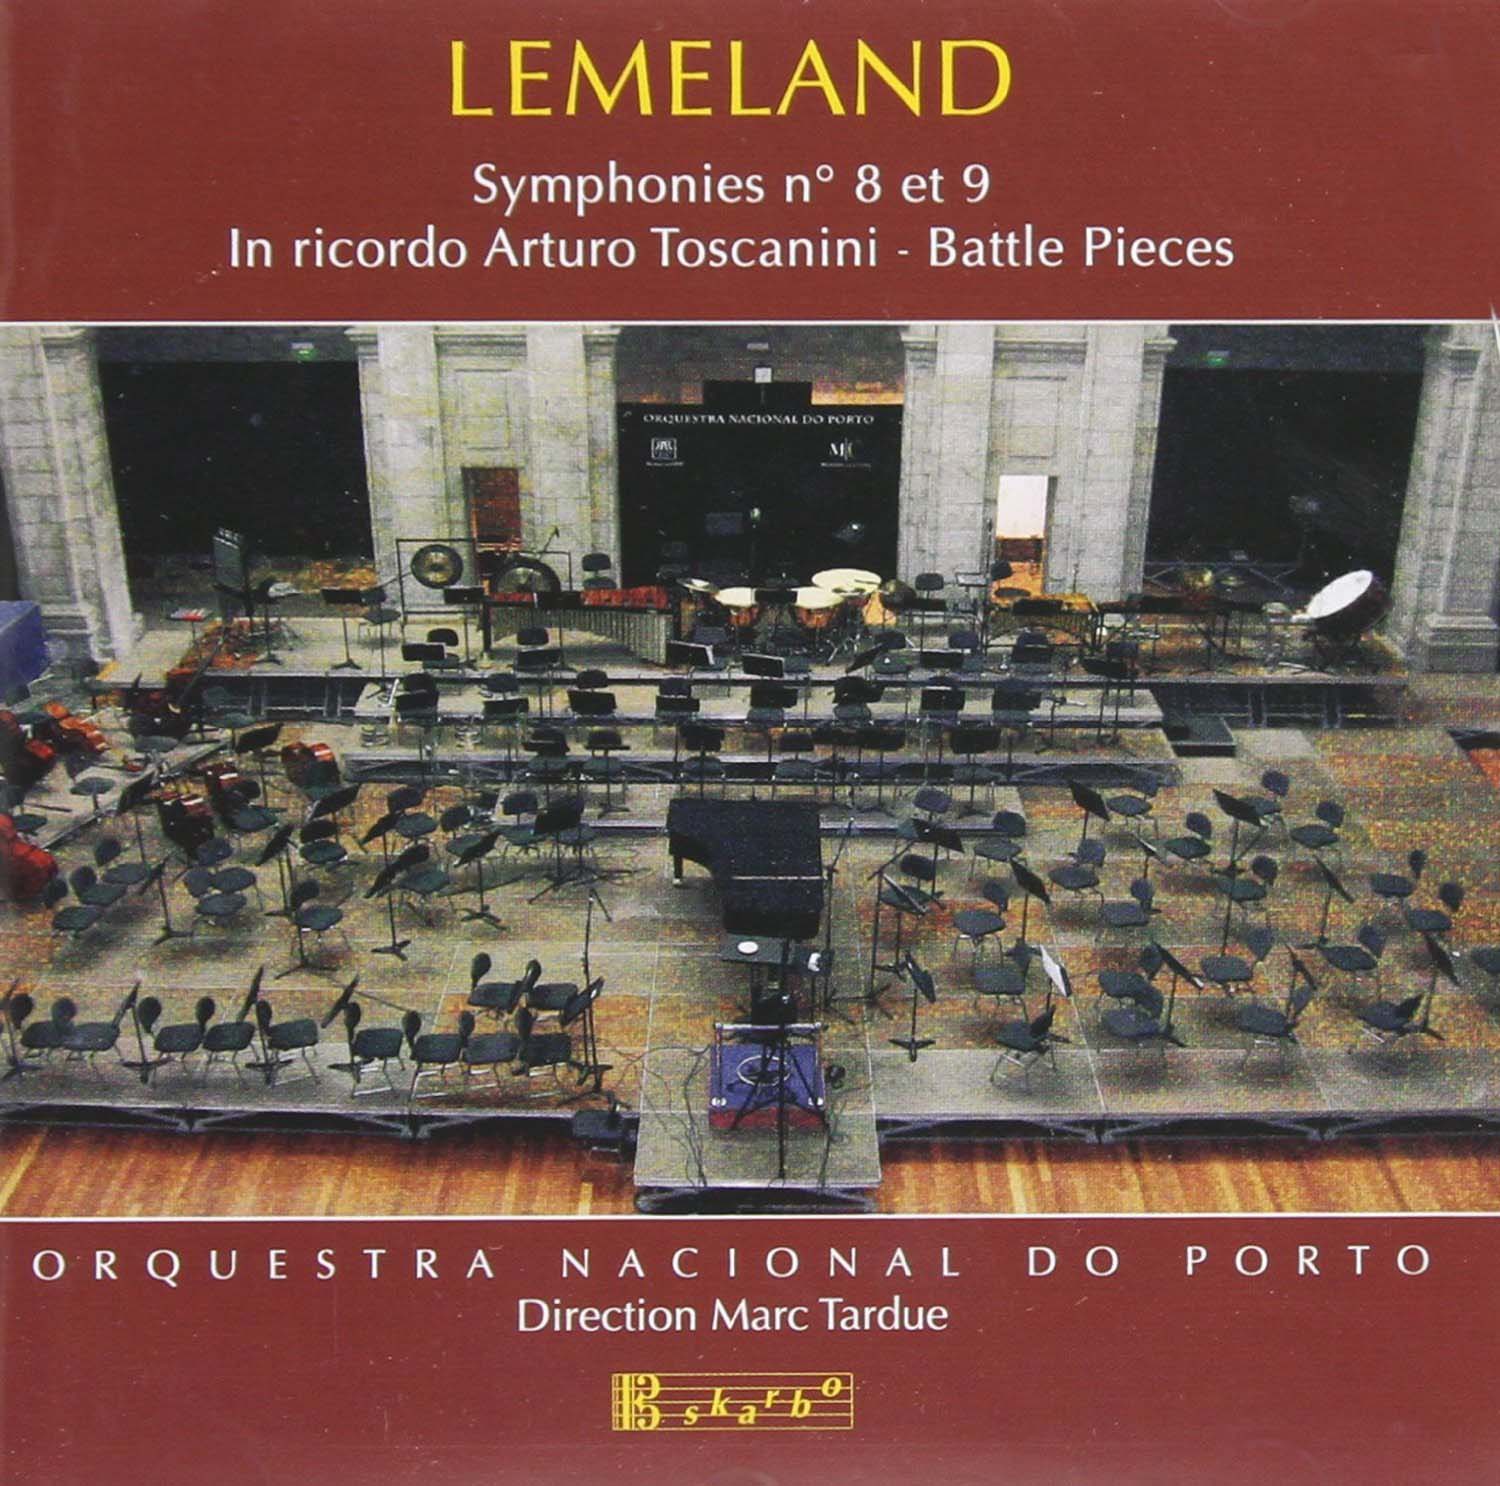 Audio Cd Aubert Lemeland - Symphonies No.8 Et 9 NUOVO SIGILLATO, EDIZIONE DEL 26/07/2005 SUBITO DISPONIBILE